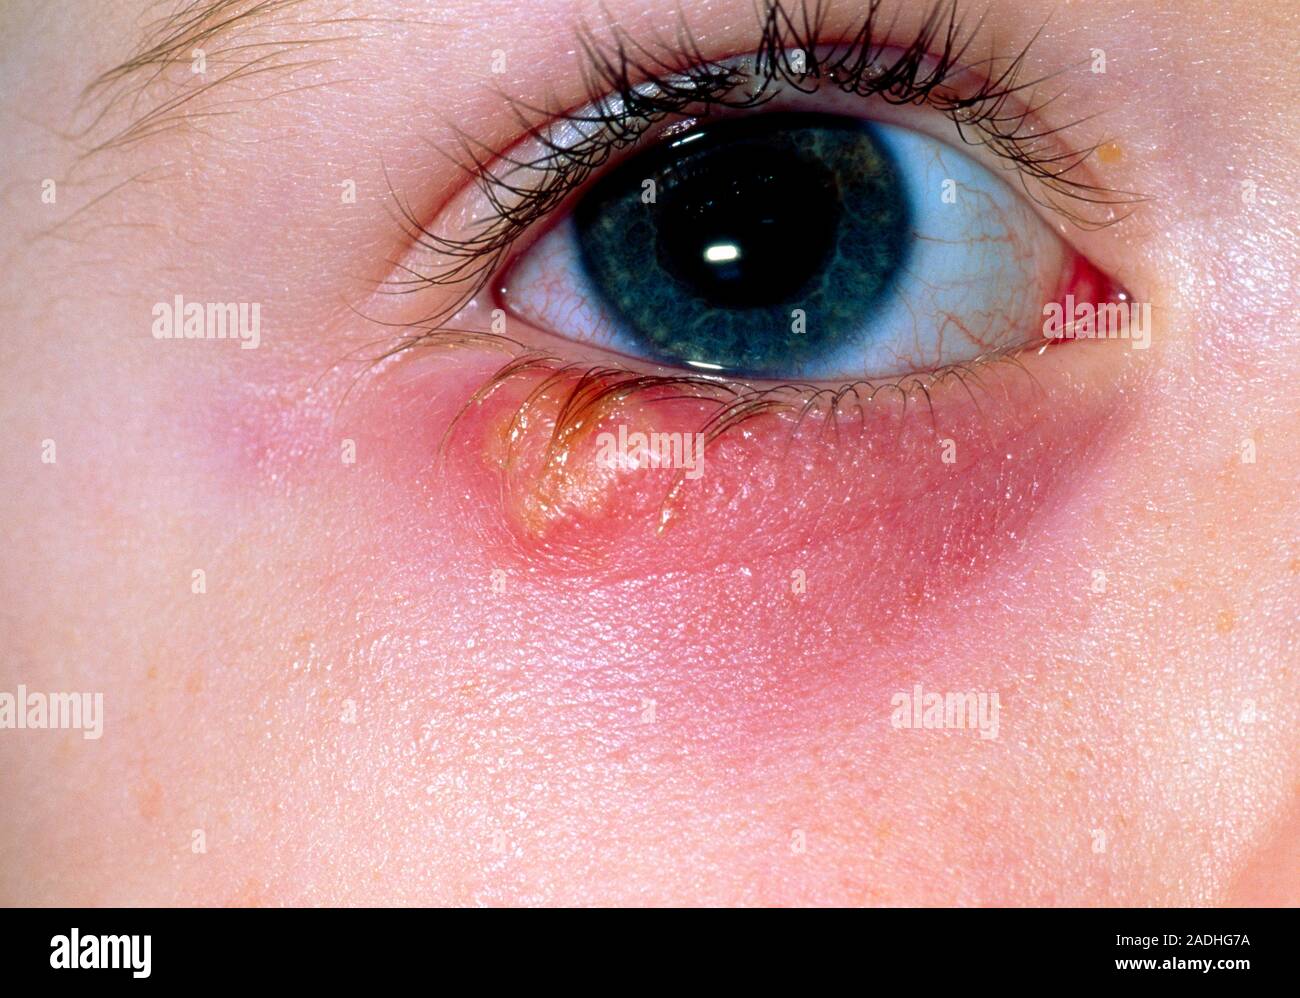 El Herpes simplex. Primer plano del ojo de 2 años de edad mostrando una  ampolla por herpes simplex en su párpado inferior. La pequeña ampolla llena  de líquido Fotografía de stock - Alamy